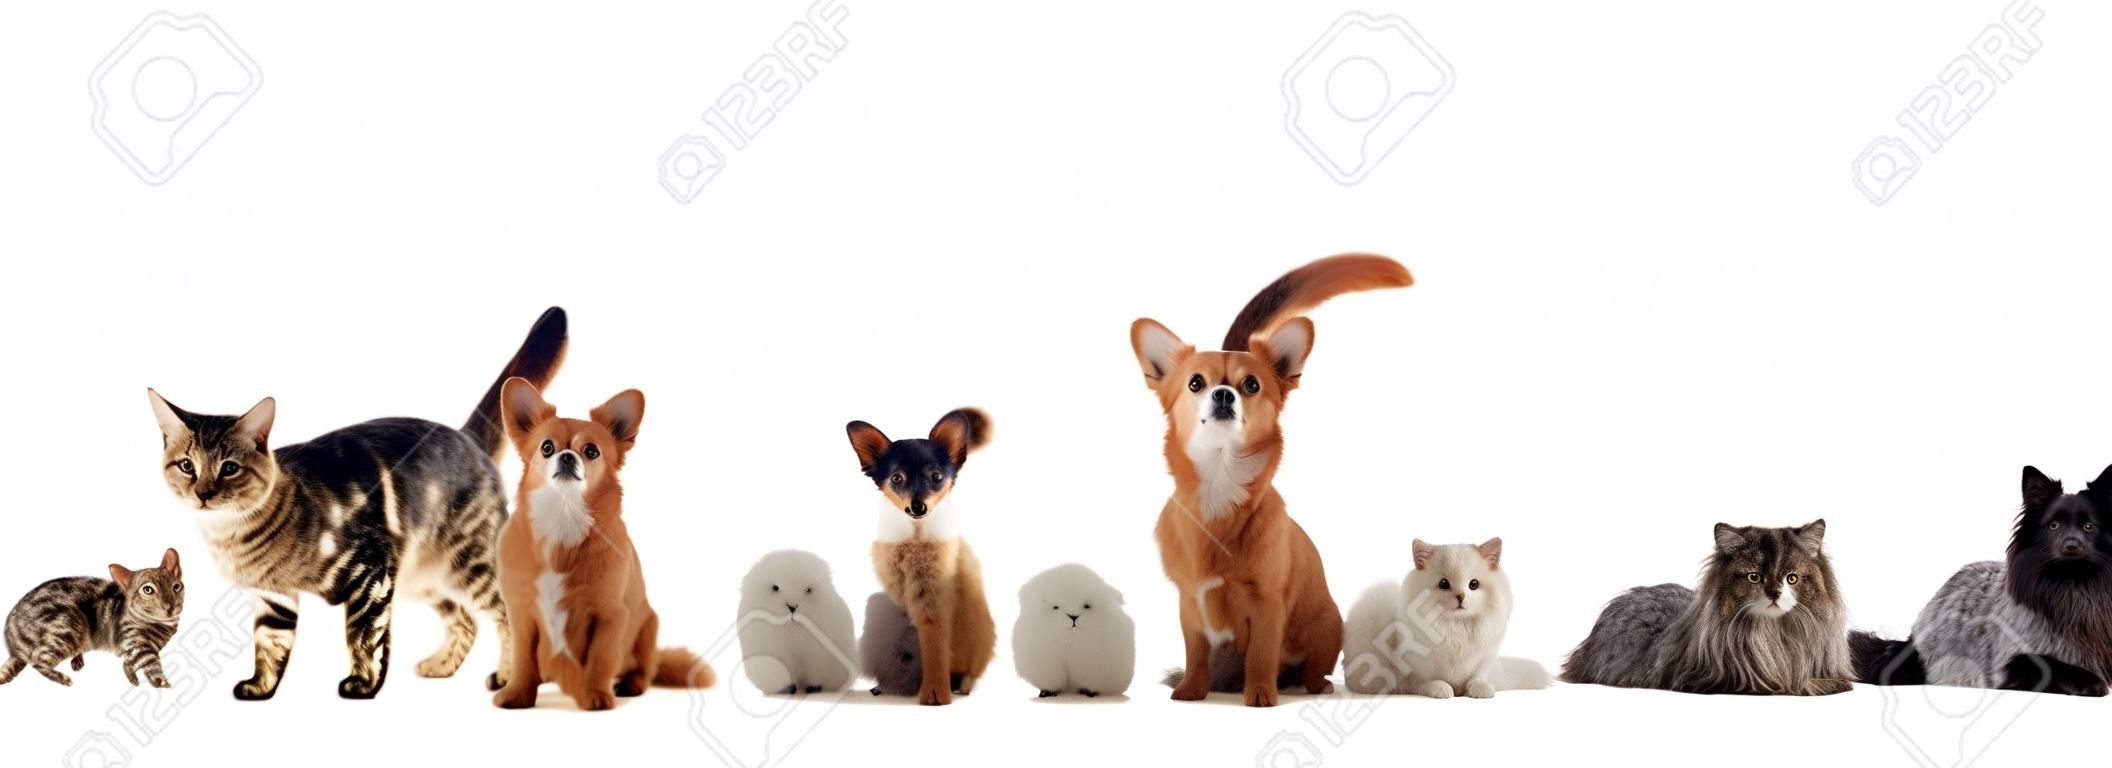 gruppo di animali da compagnia davanti a uno sfondo bianco